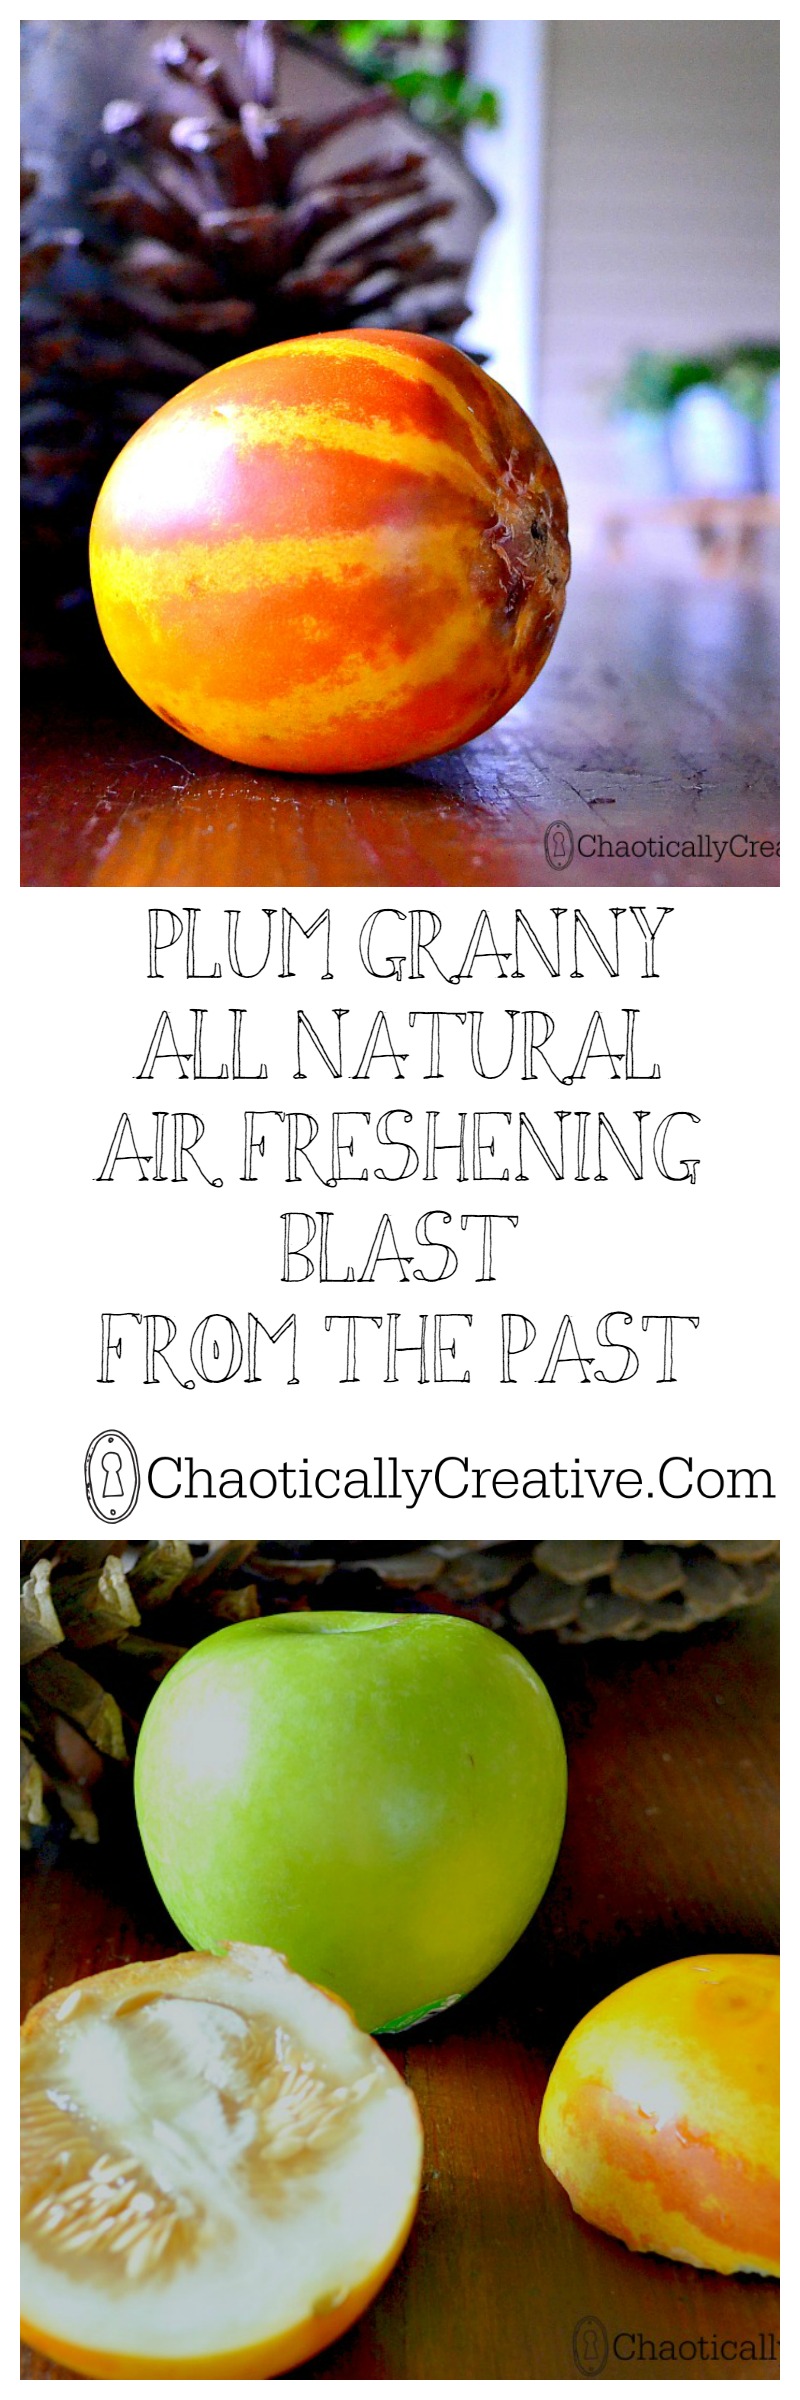 plum granny collage